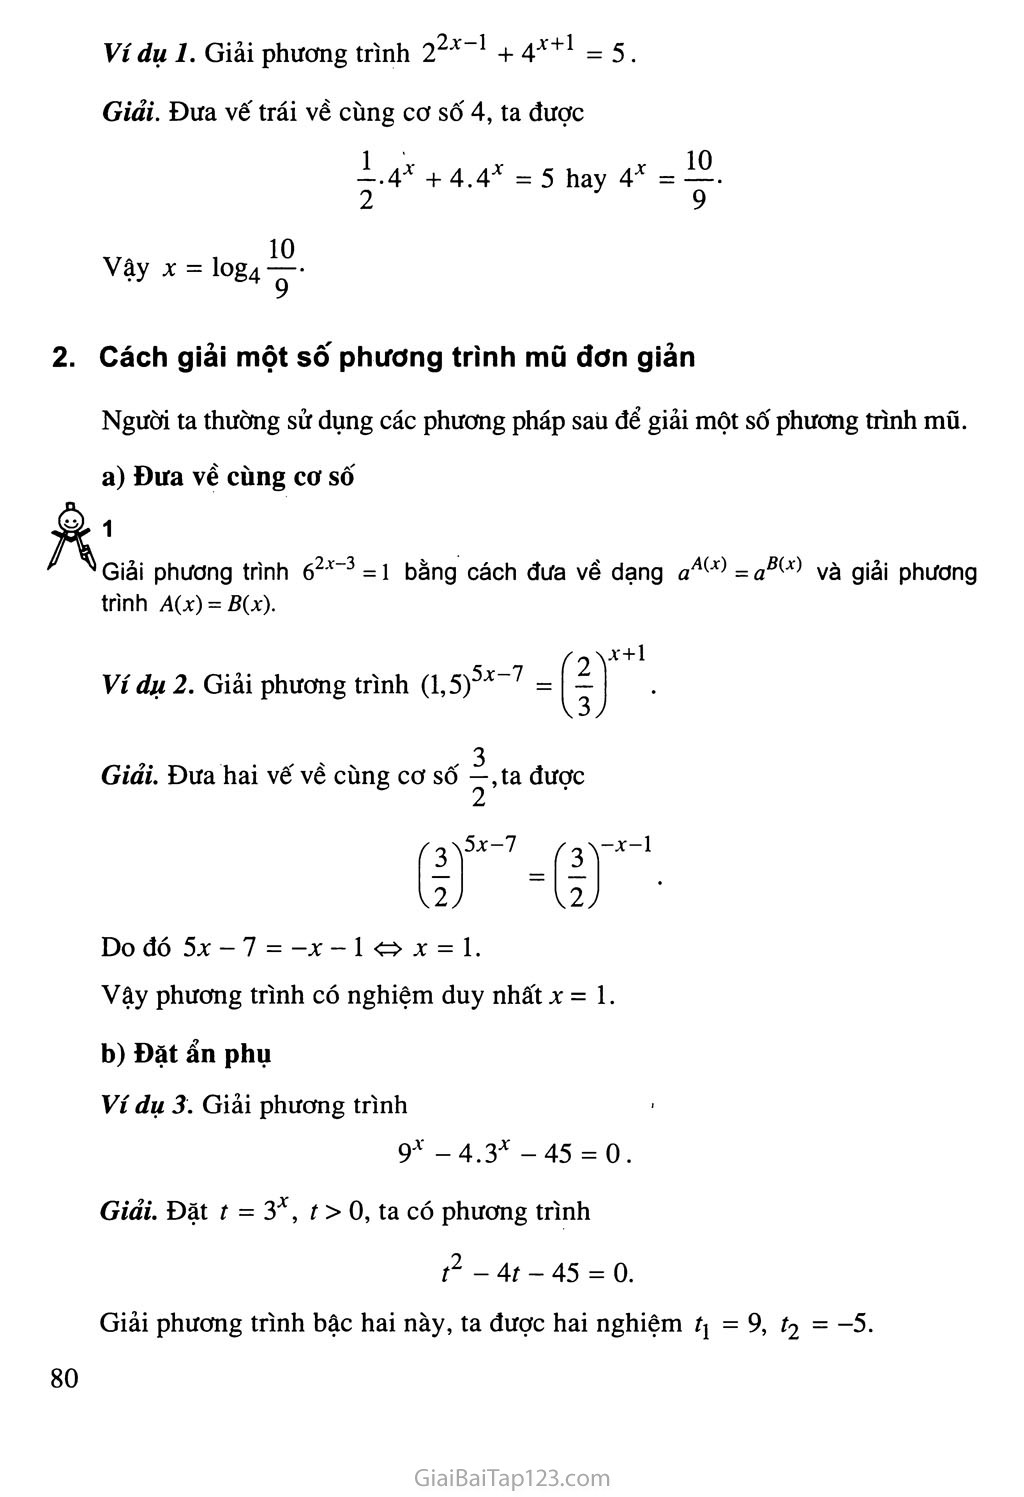 Bài 5. Phương trình mũ và phương trình lôgarit trang 3